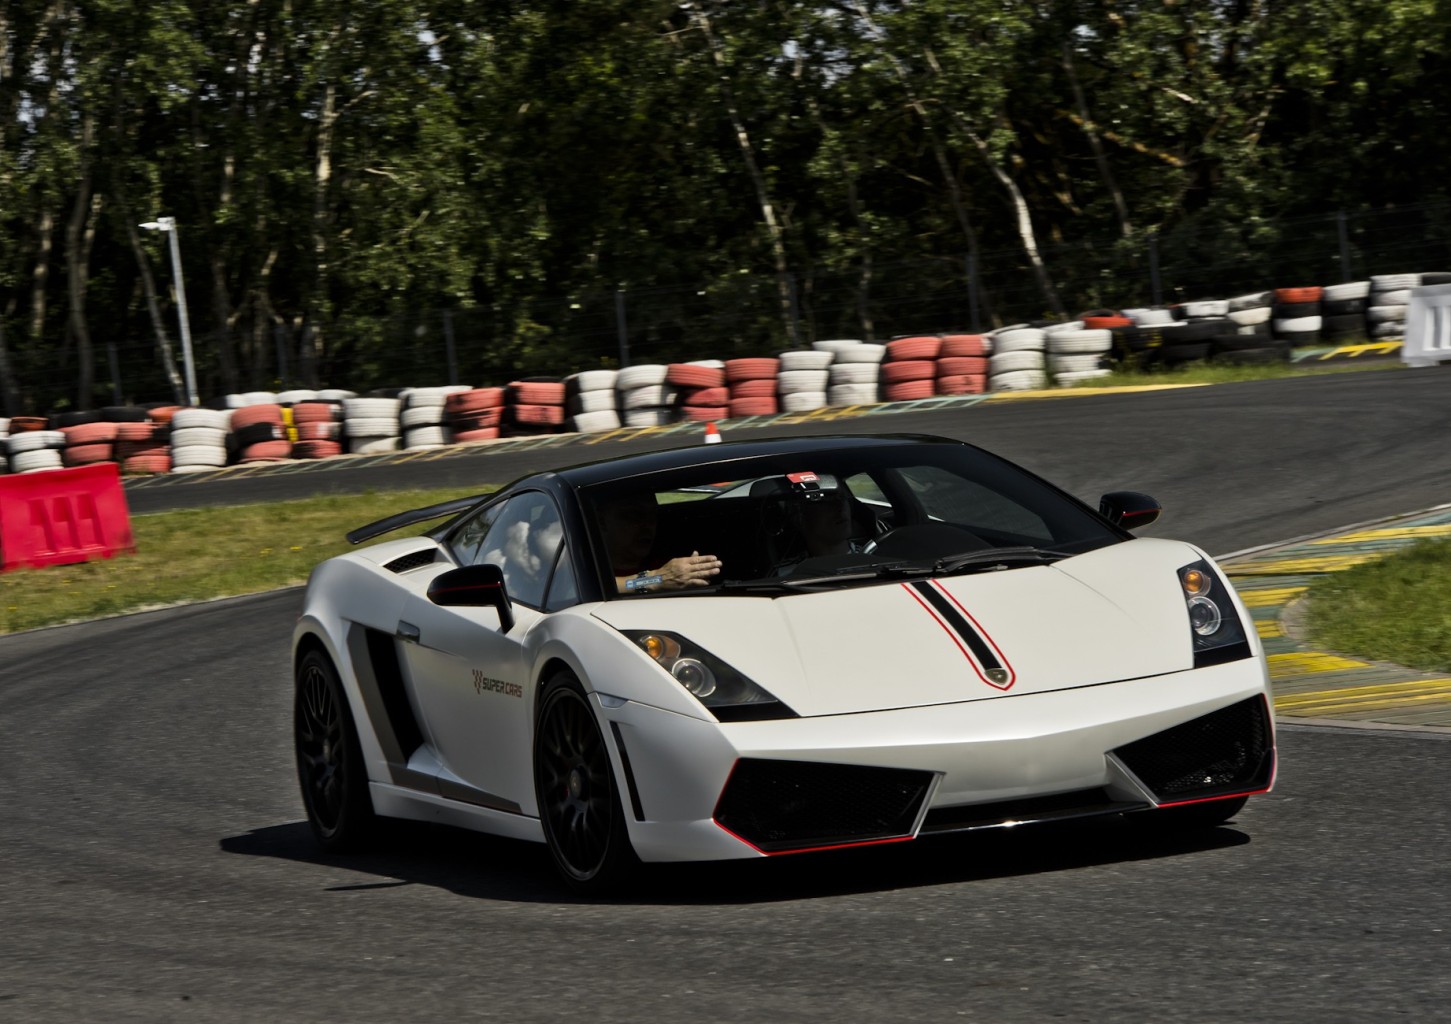 Pojedynek Lamborghini Gallardo vs. Nissan GTR | 4 okrążenia | Wiele Lokalizacji